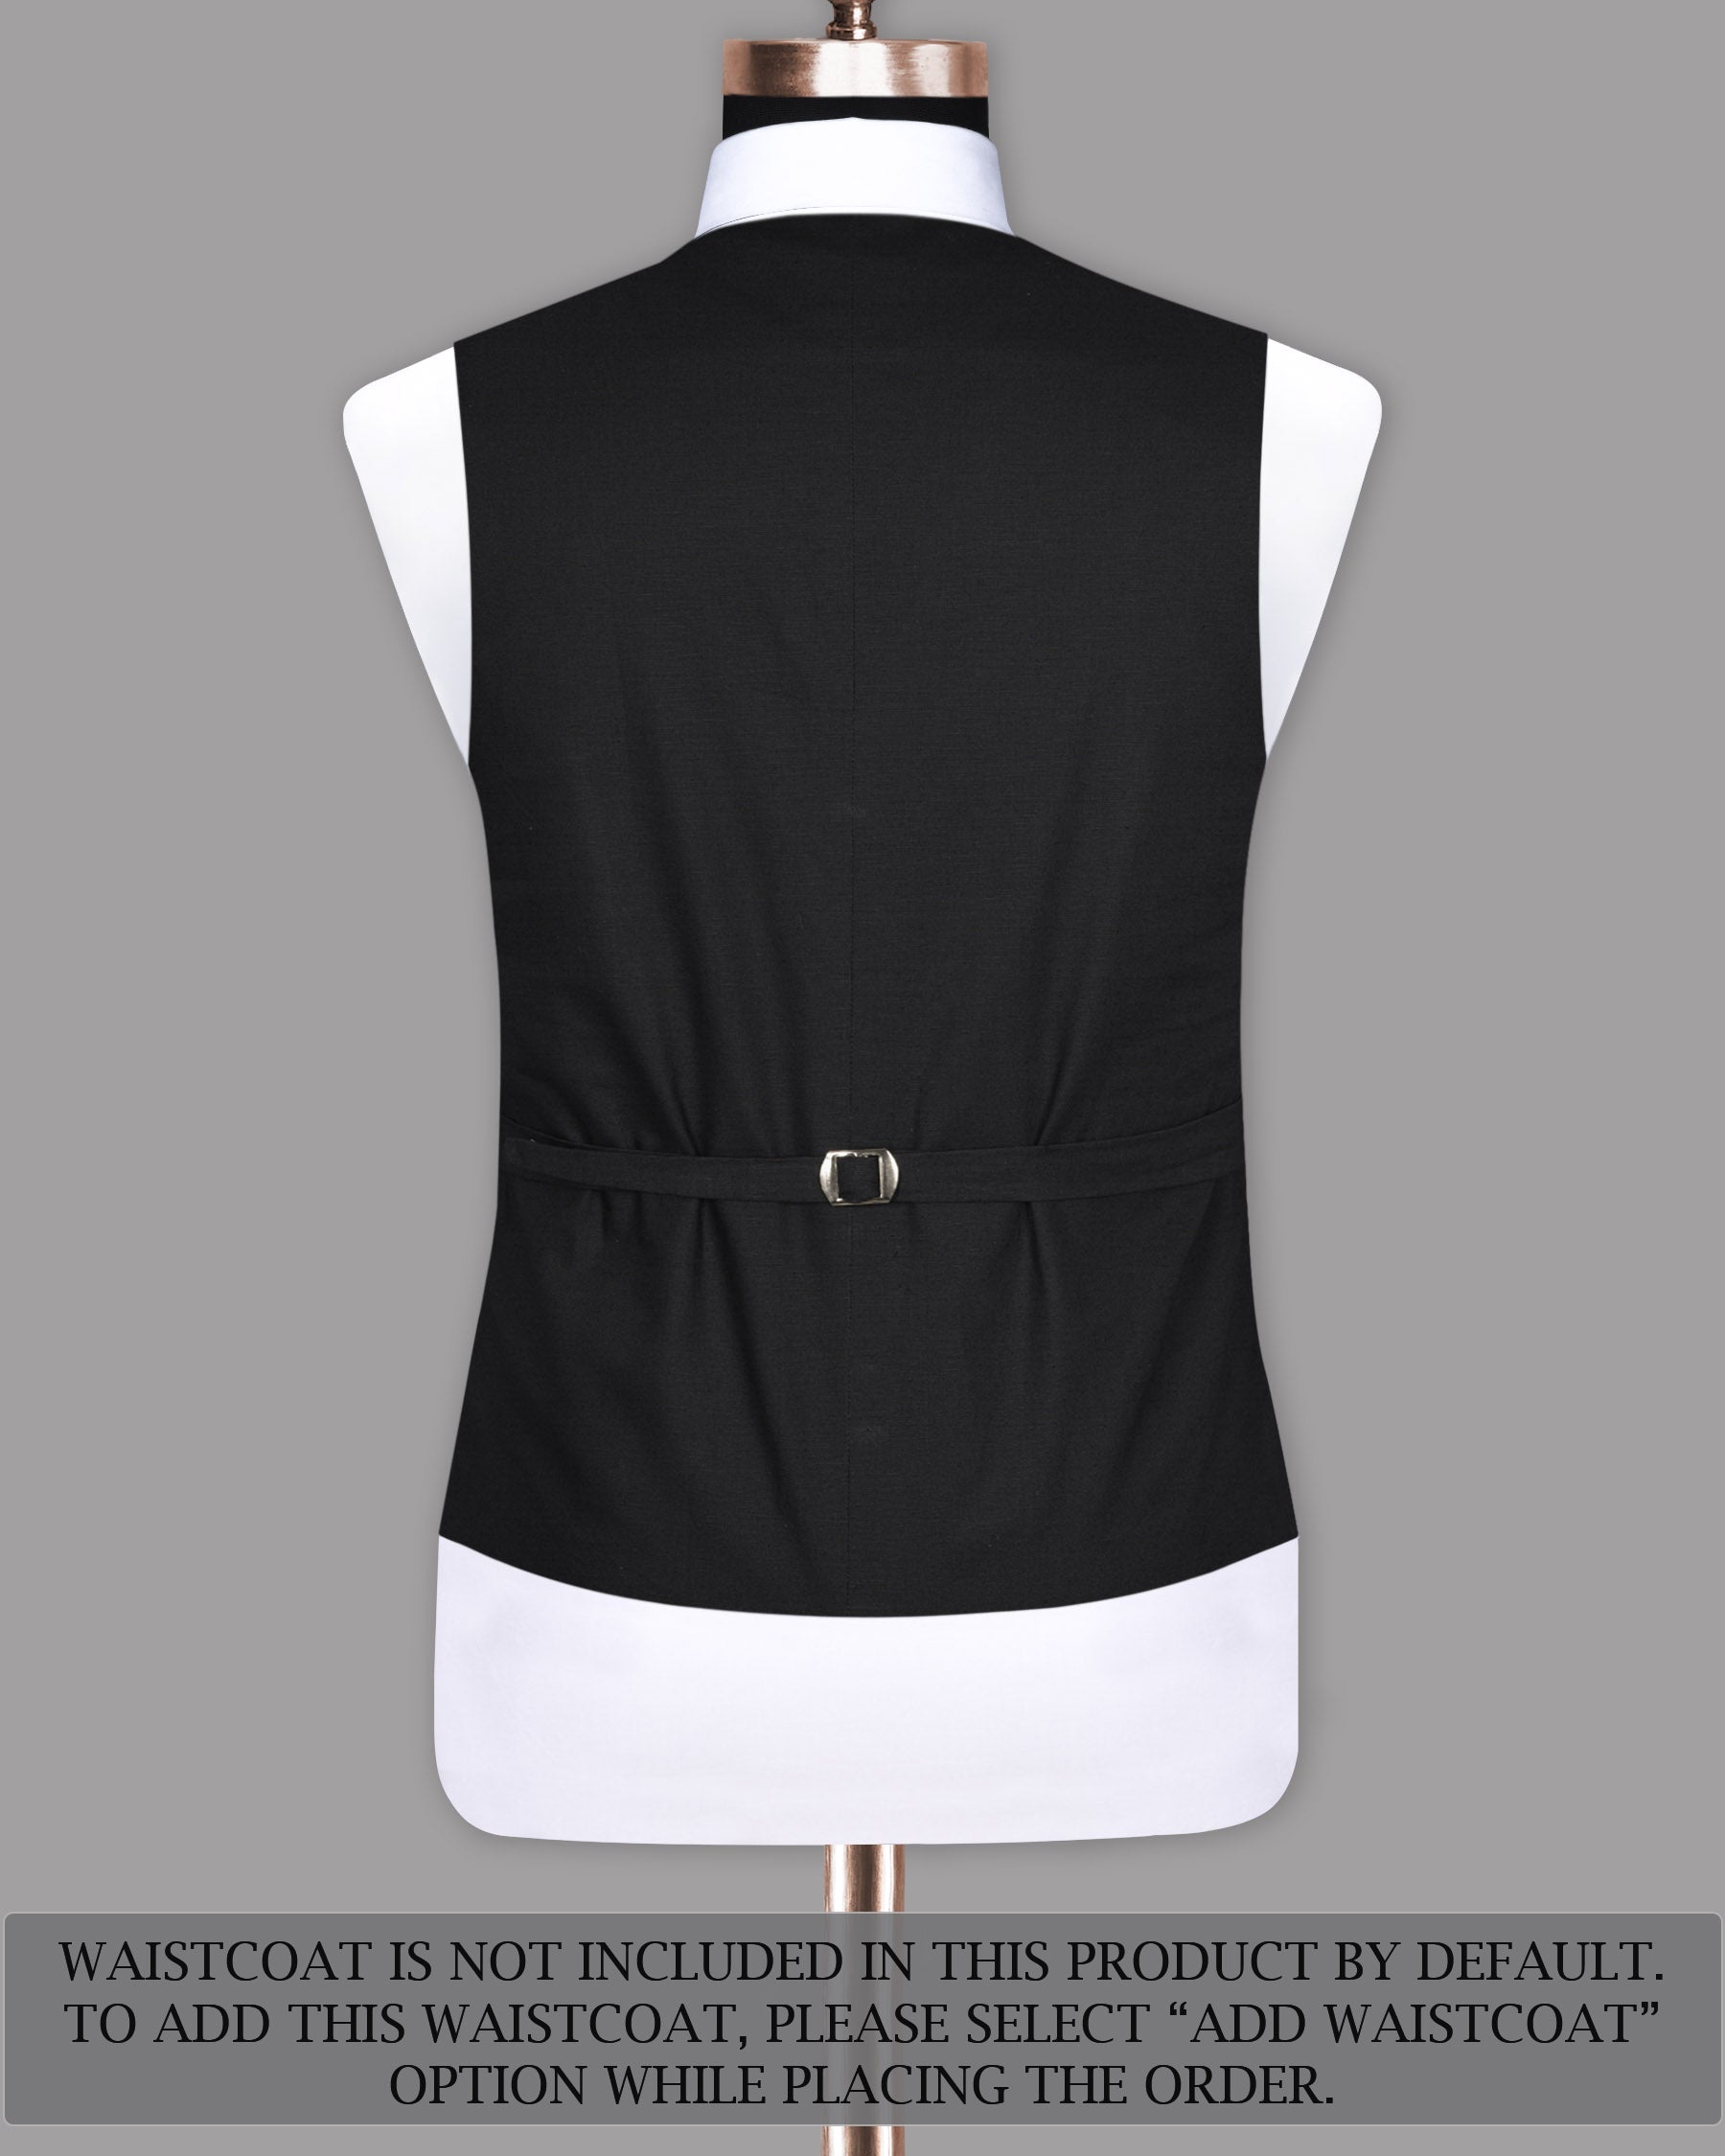 Jet Black Solid Luxurious Linen Sports Suit